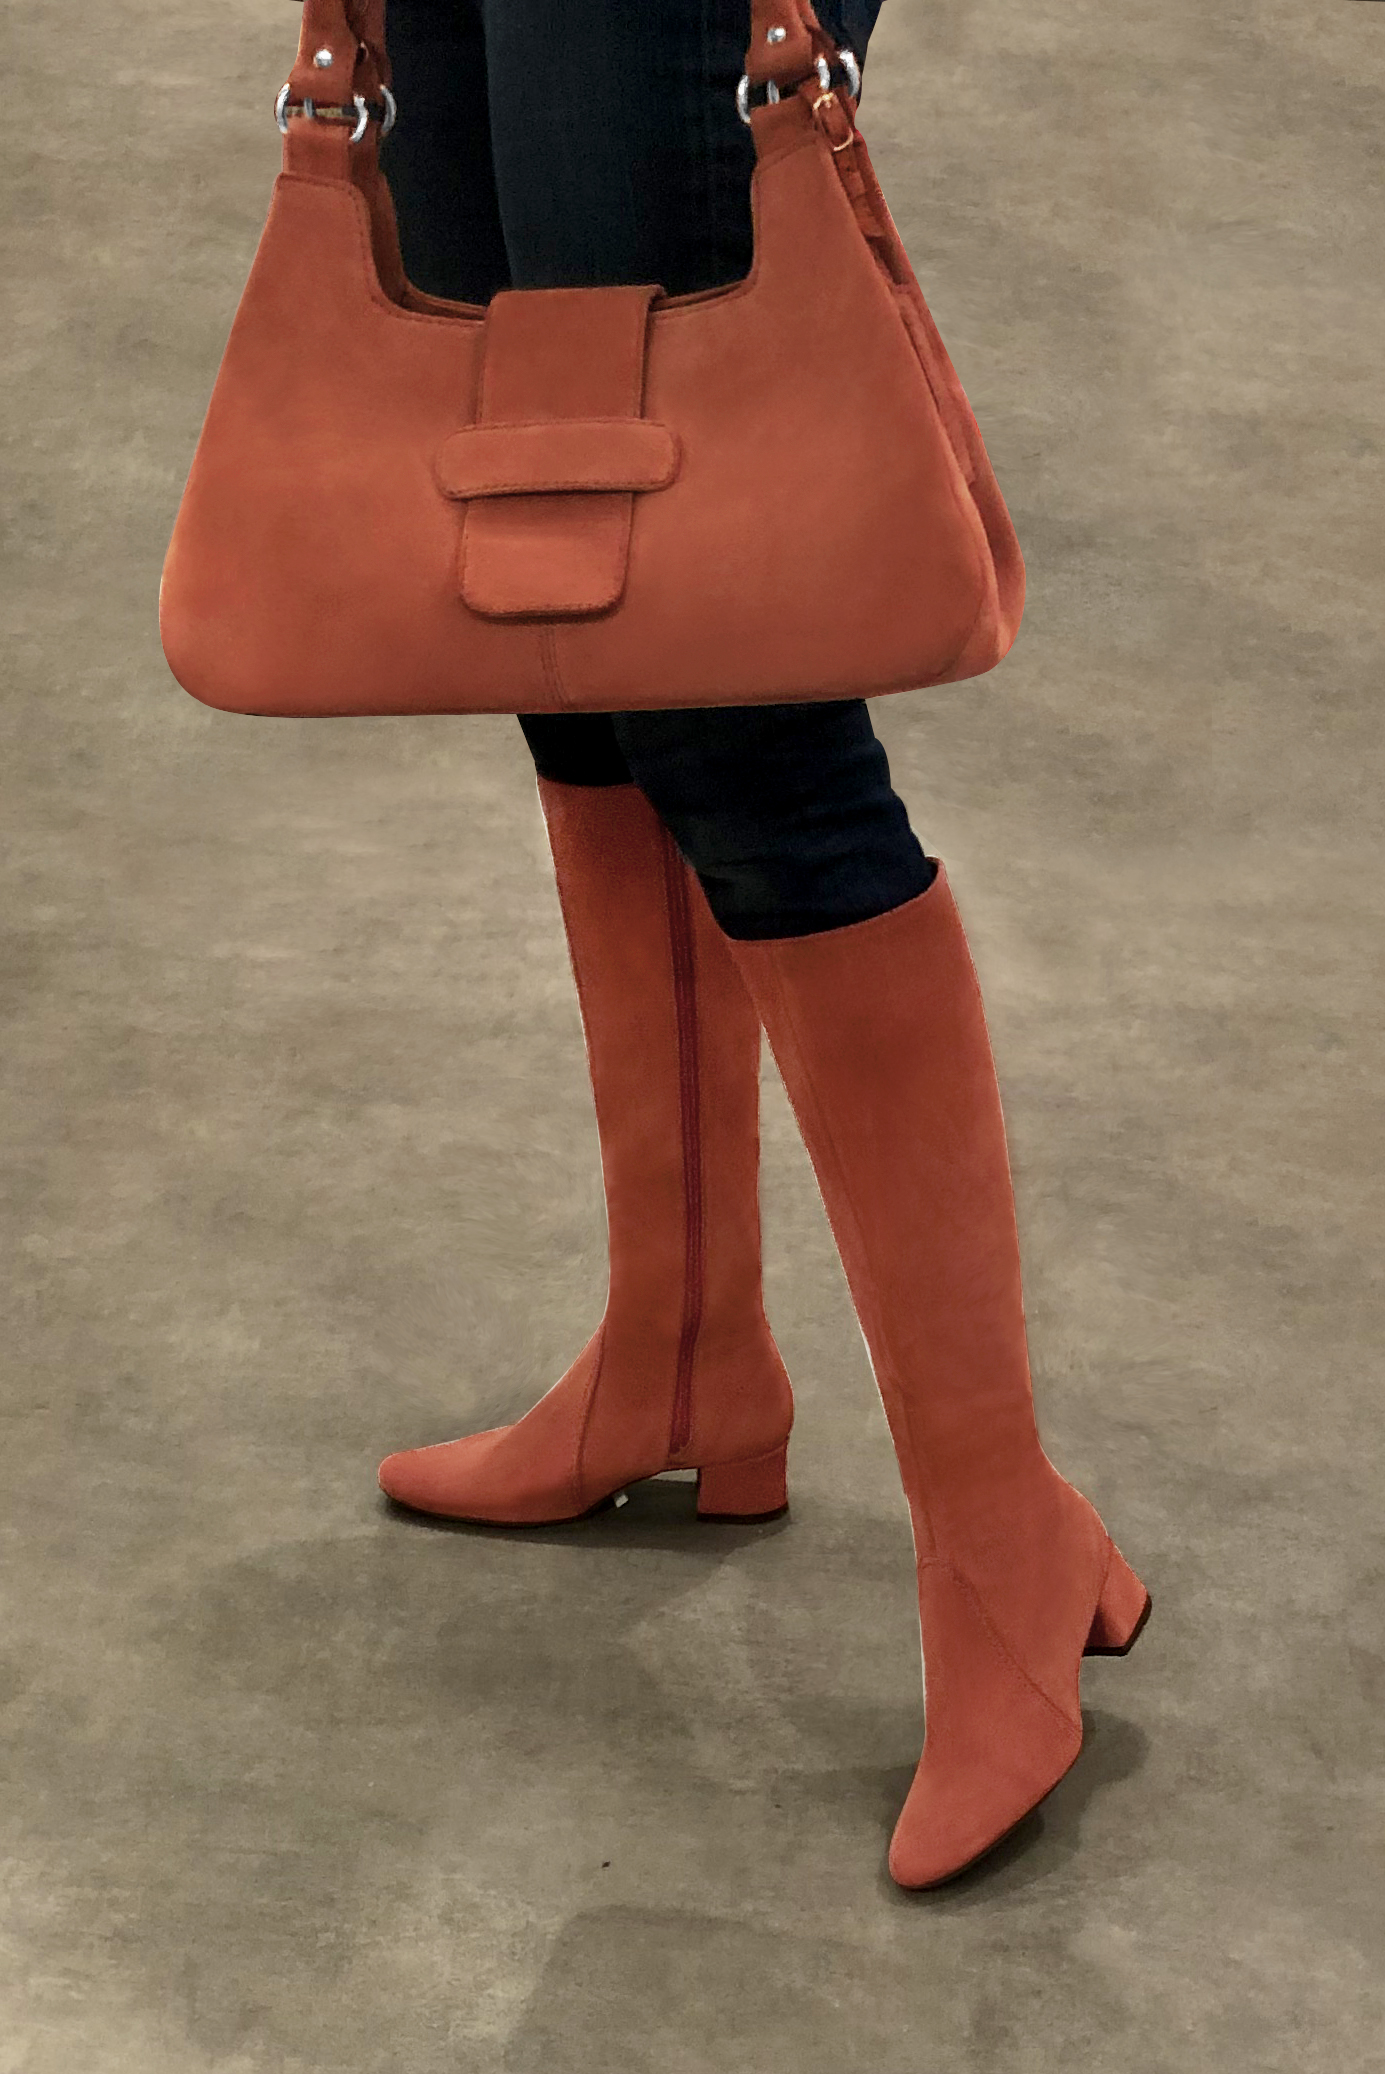 Terracotta orange women's dress handbag, matching pumps and belts. Worn view - Florence KOOIJMAN